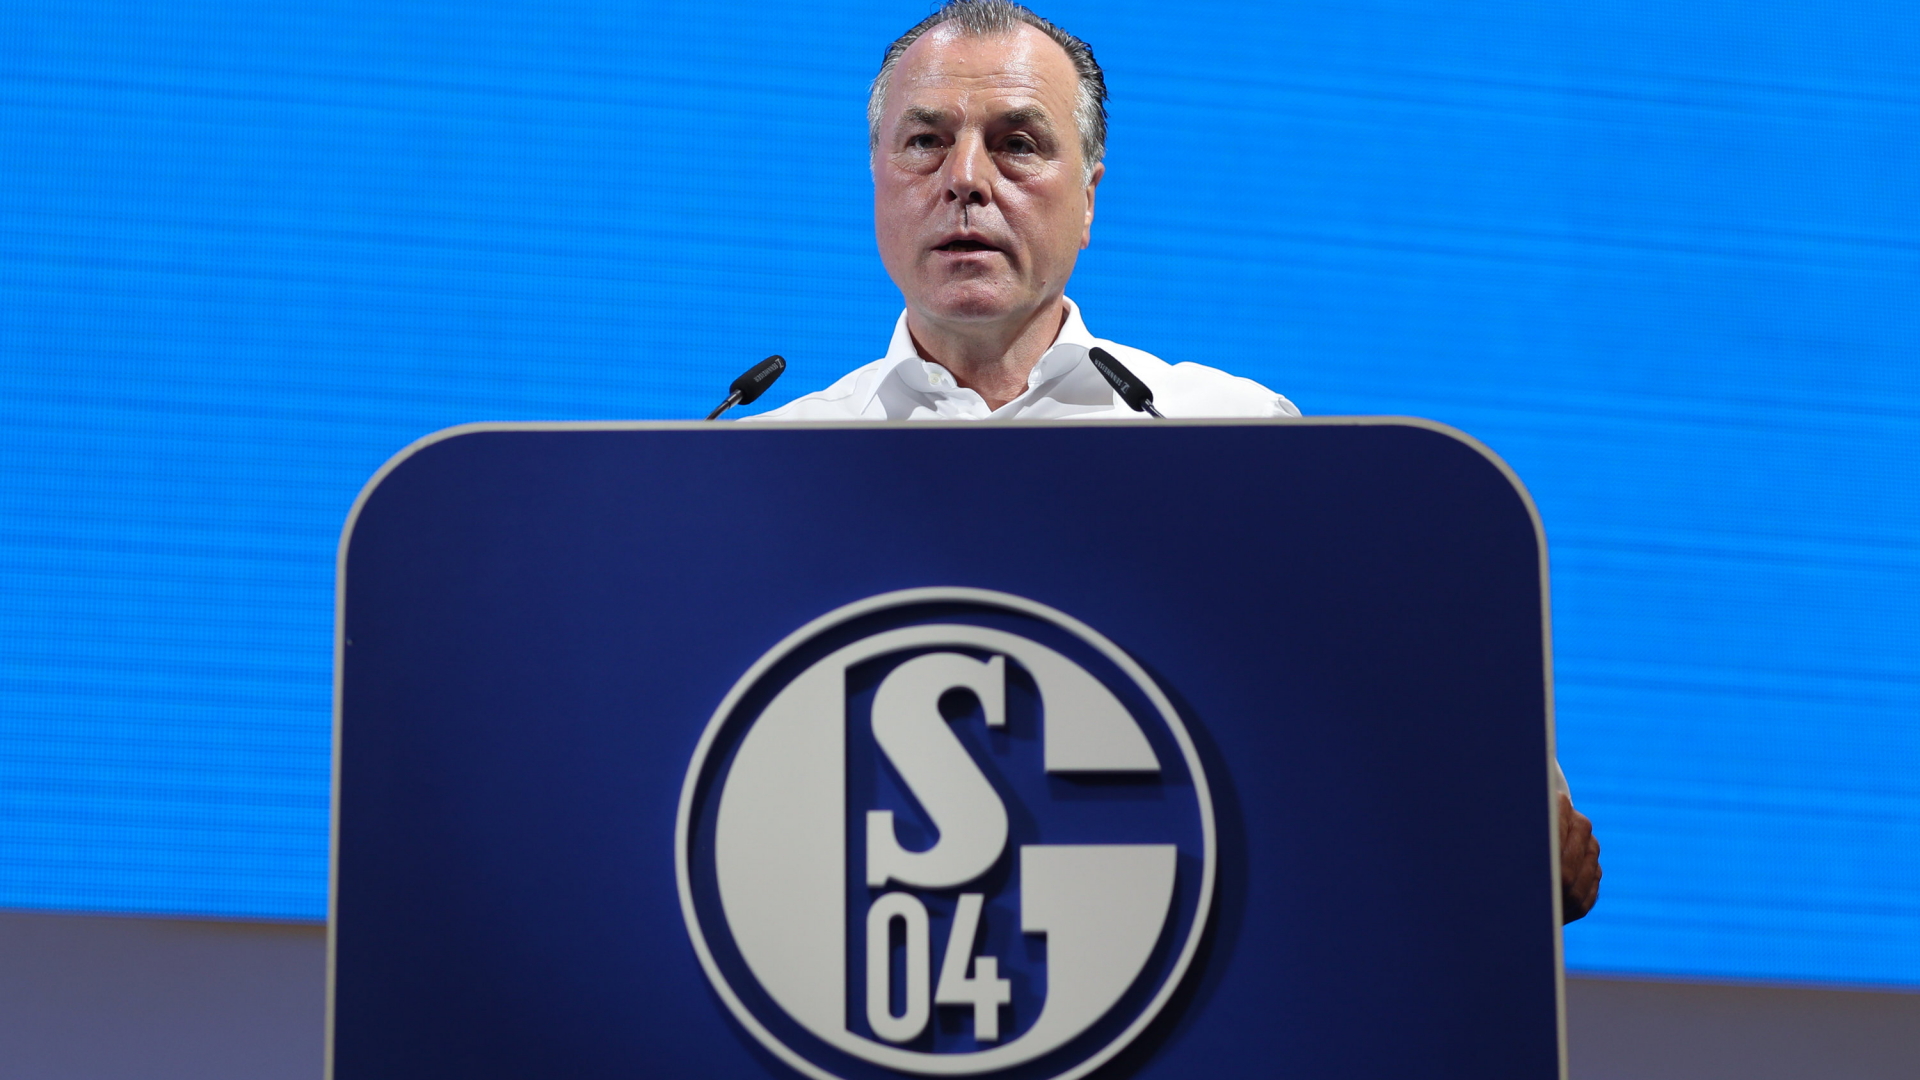 Der Schalker Aufsichtsratsvorsitzender Clemens Tönnies spricht auf der Bühne